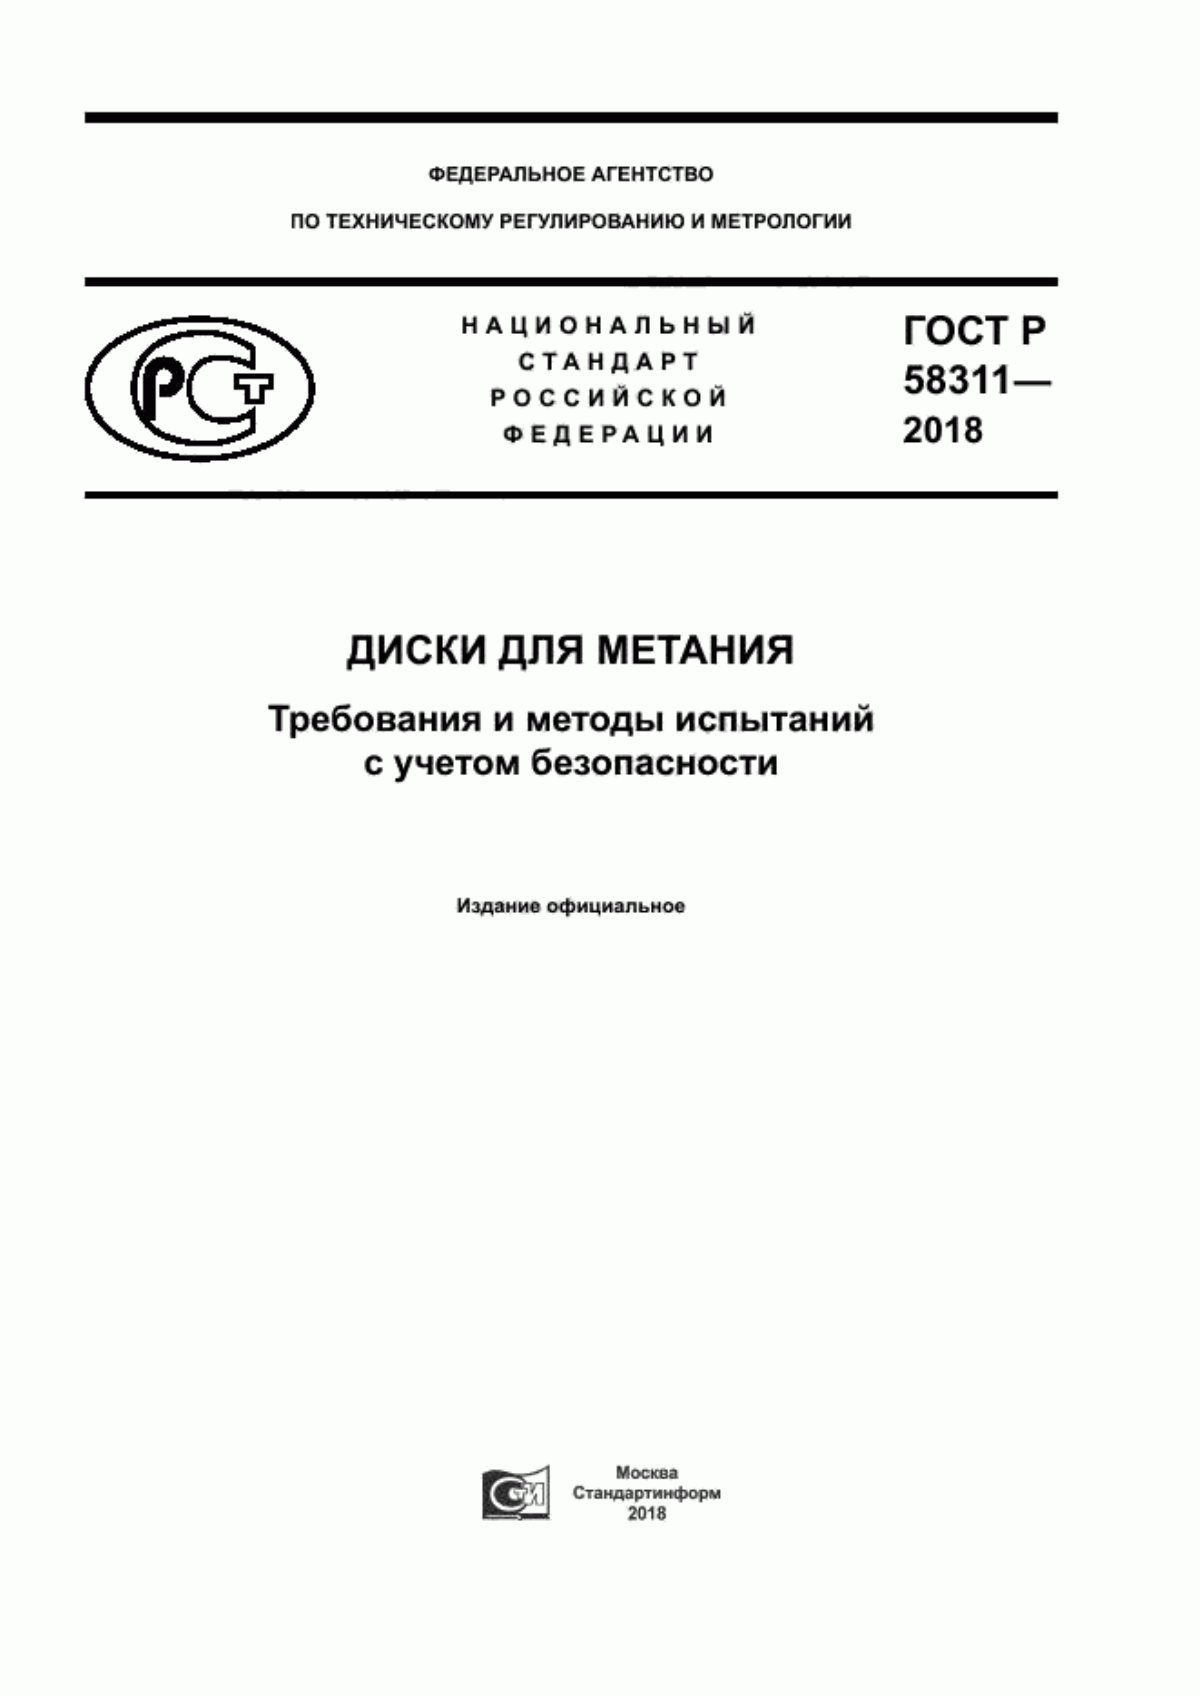 ГОСТ Р 58311-2018 Диски для метания. Требования и методы испытаний с учетом безопасности